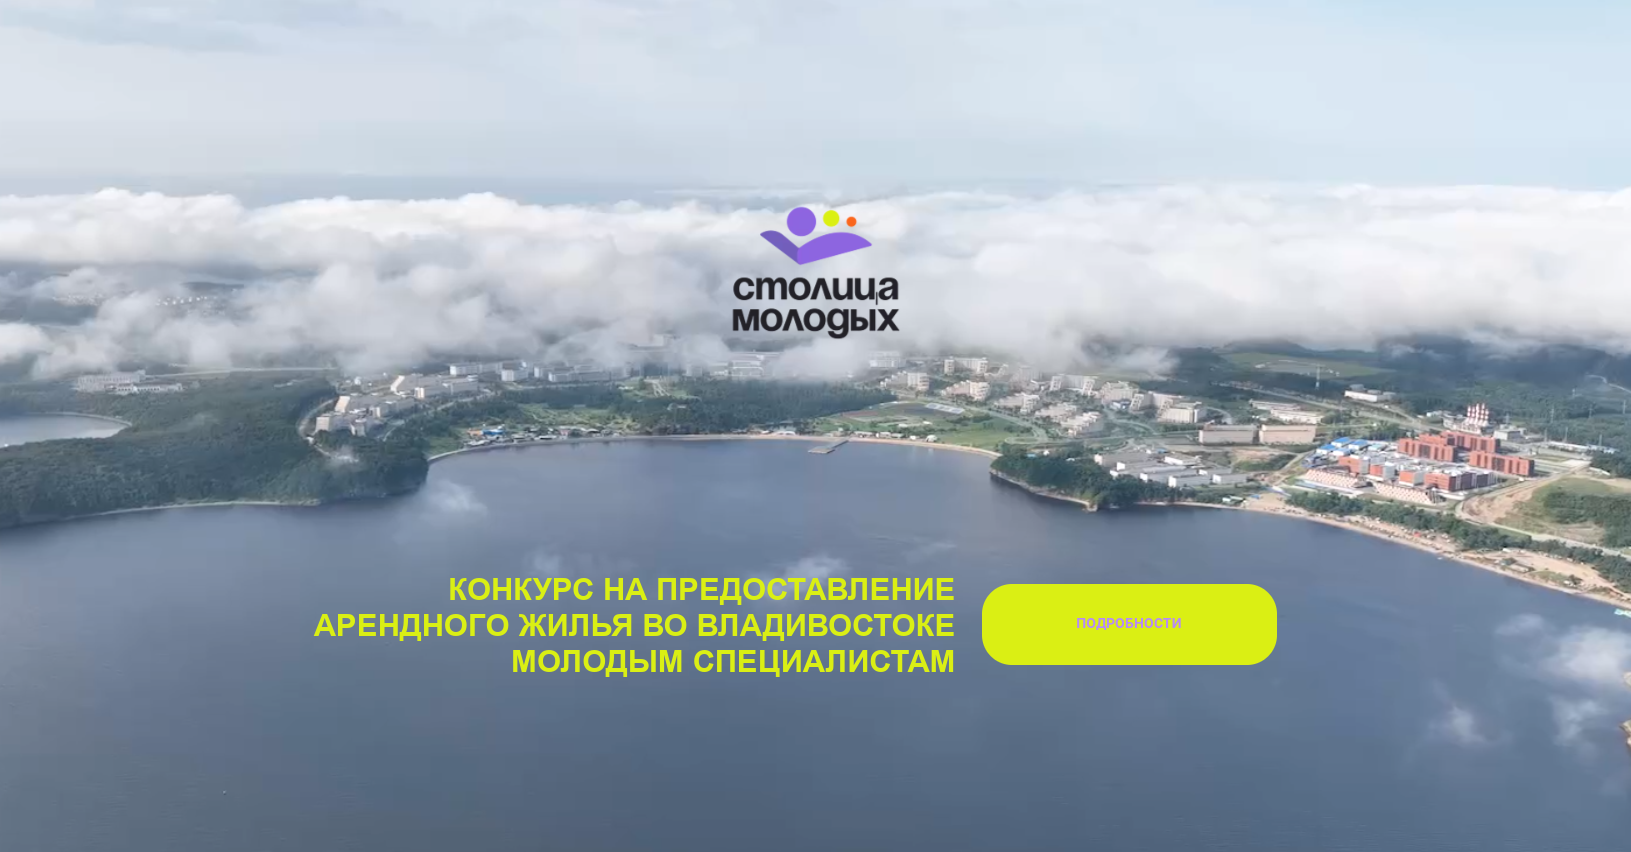 Меньше недели осталось для подачи заявки на конкурс арендного жилья в столице Приморья, сообщает primorsky.ru.